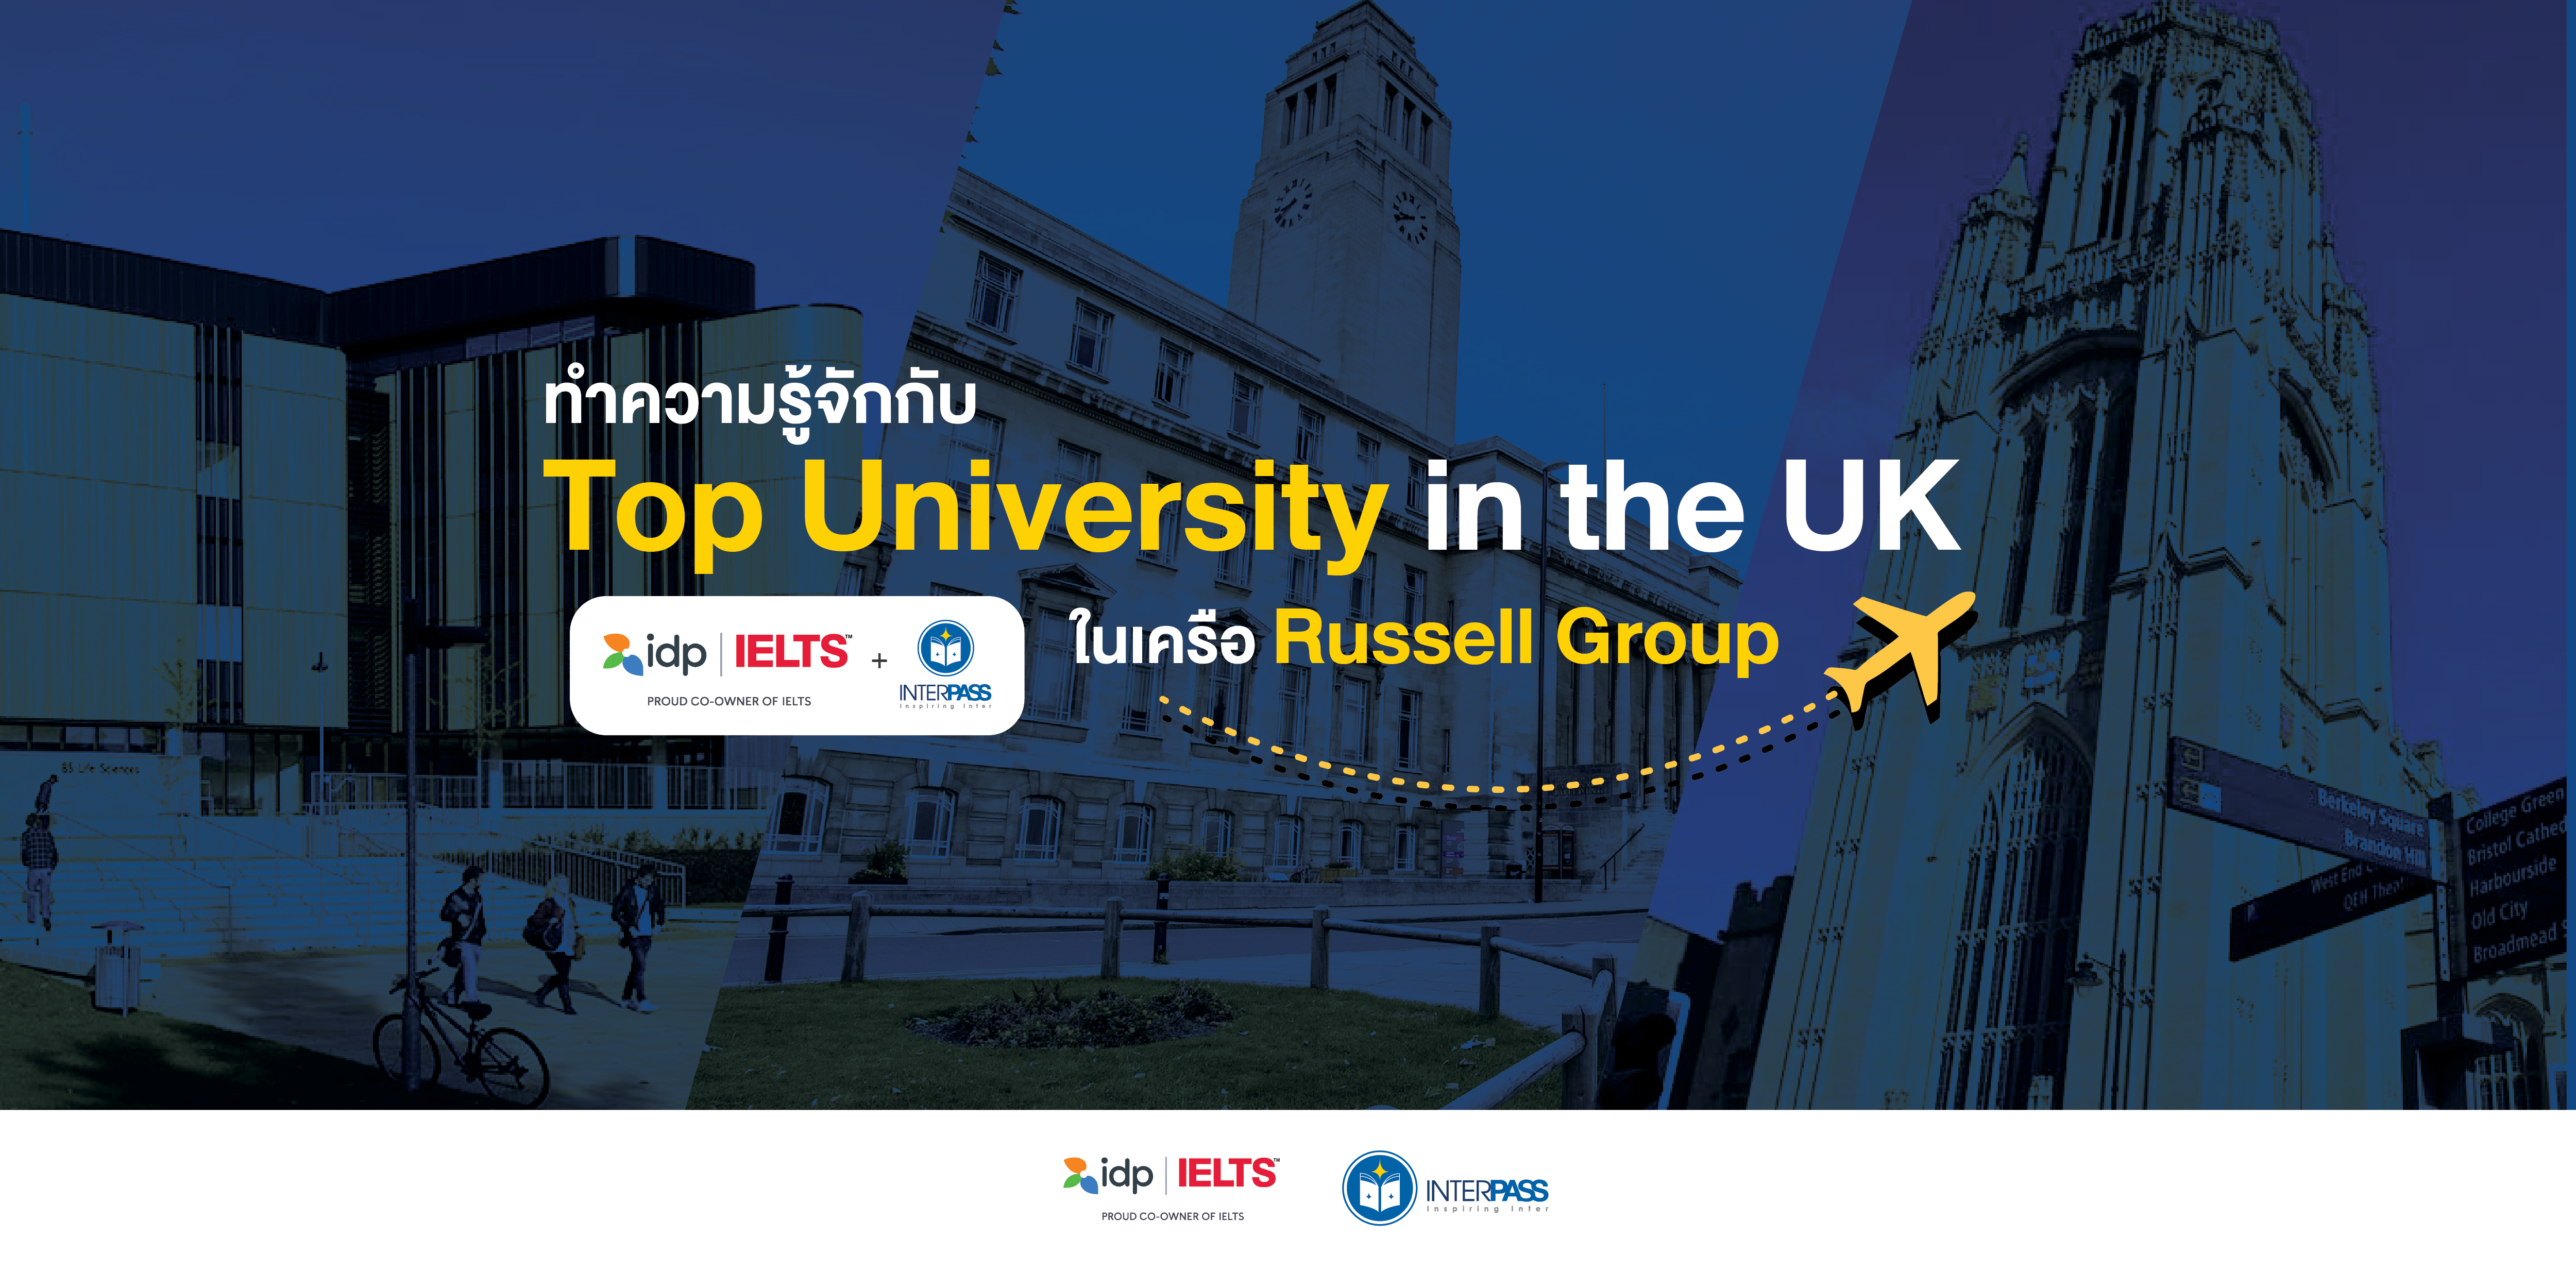 ทำความรู้จักกับ Top University in the UK ในเครือ Russell Group